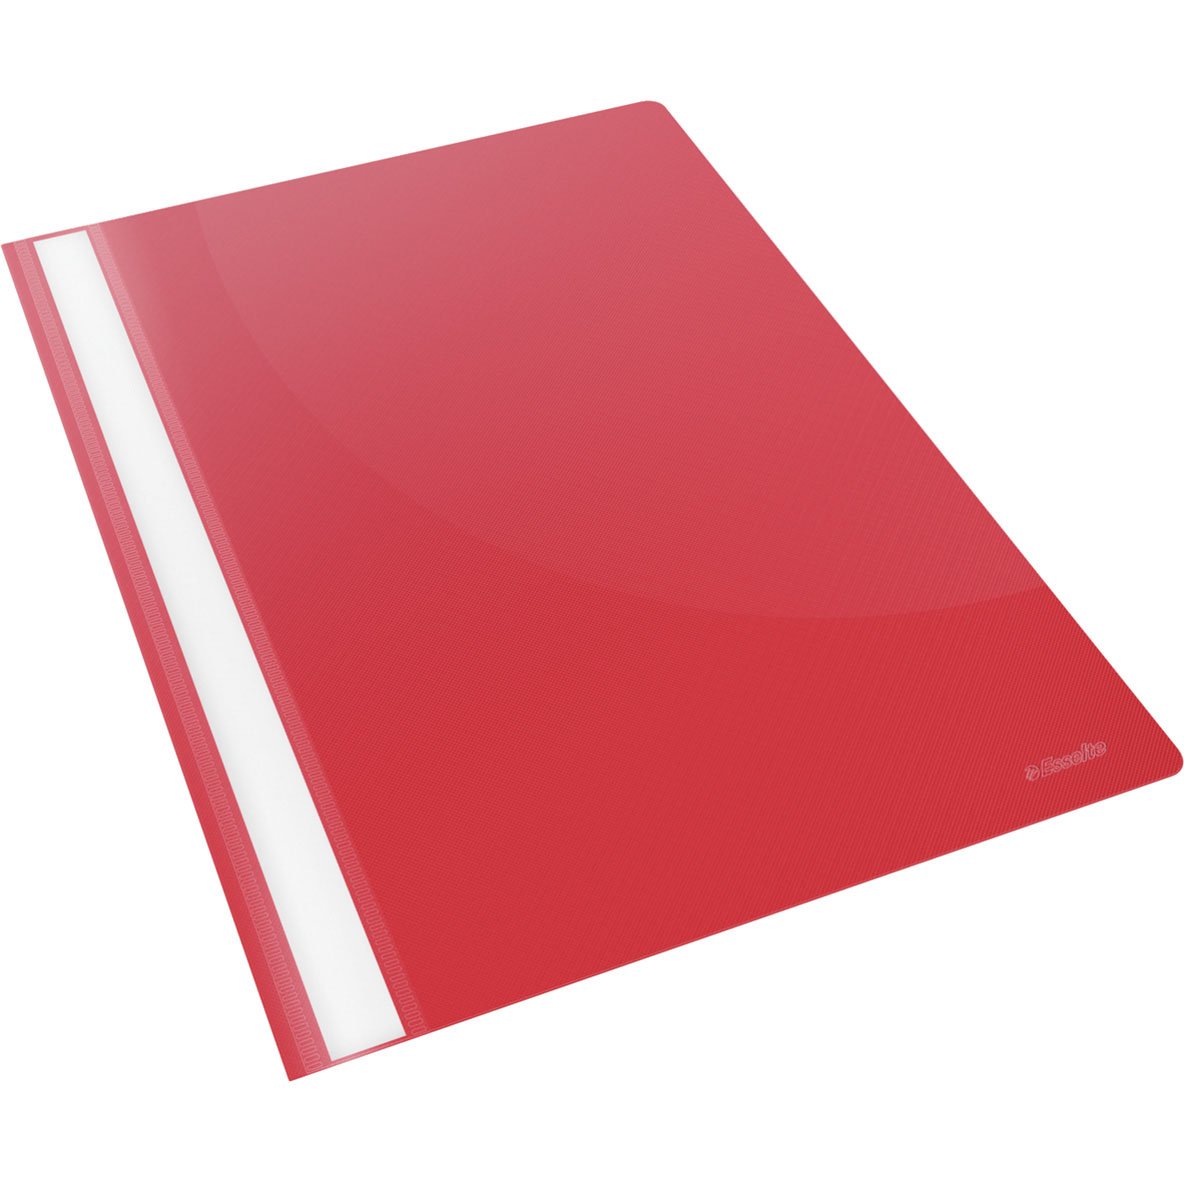 Esselte tilbudsmappe uden lomme i A4 i farven rød